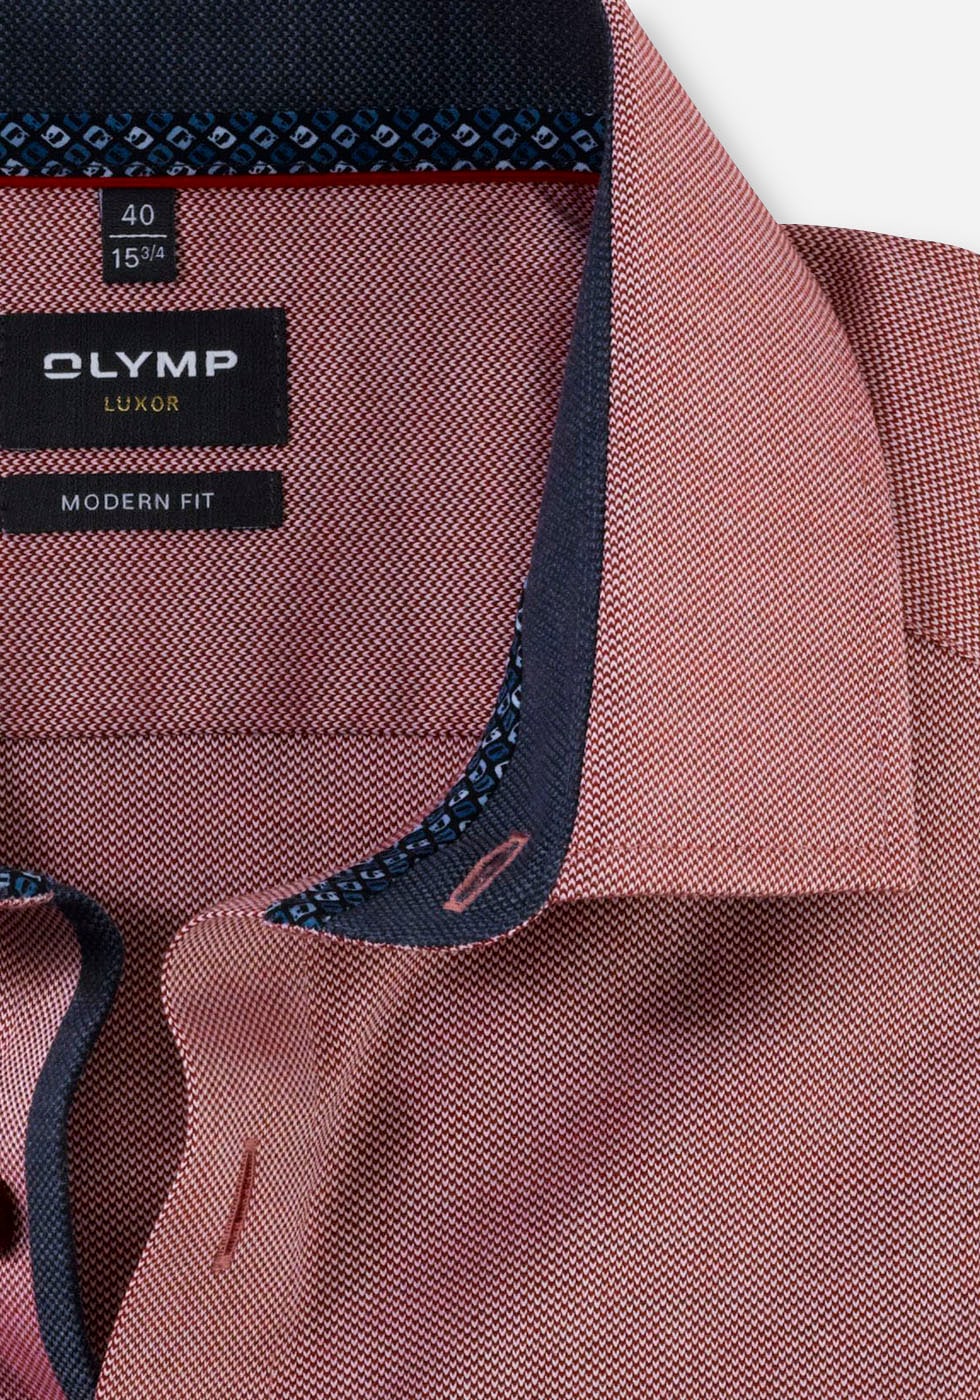 OLYMP Businesshemd »Luxor modern fit«, online Logo-Stitching mit bei OTTO shoppen tonigem